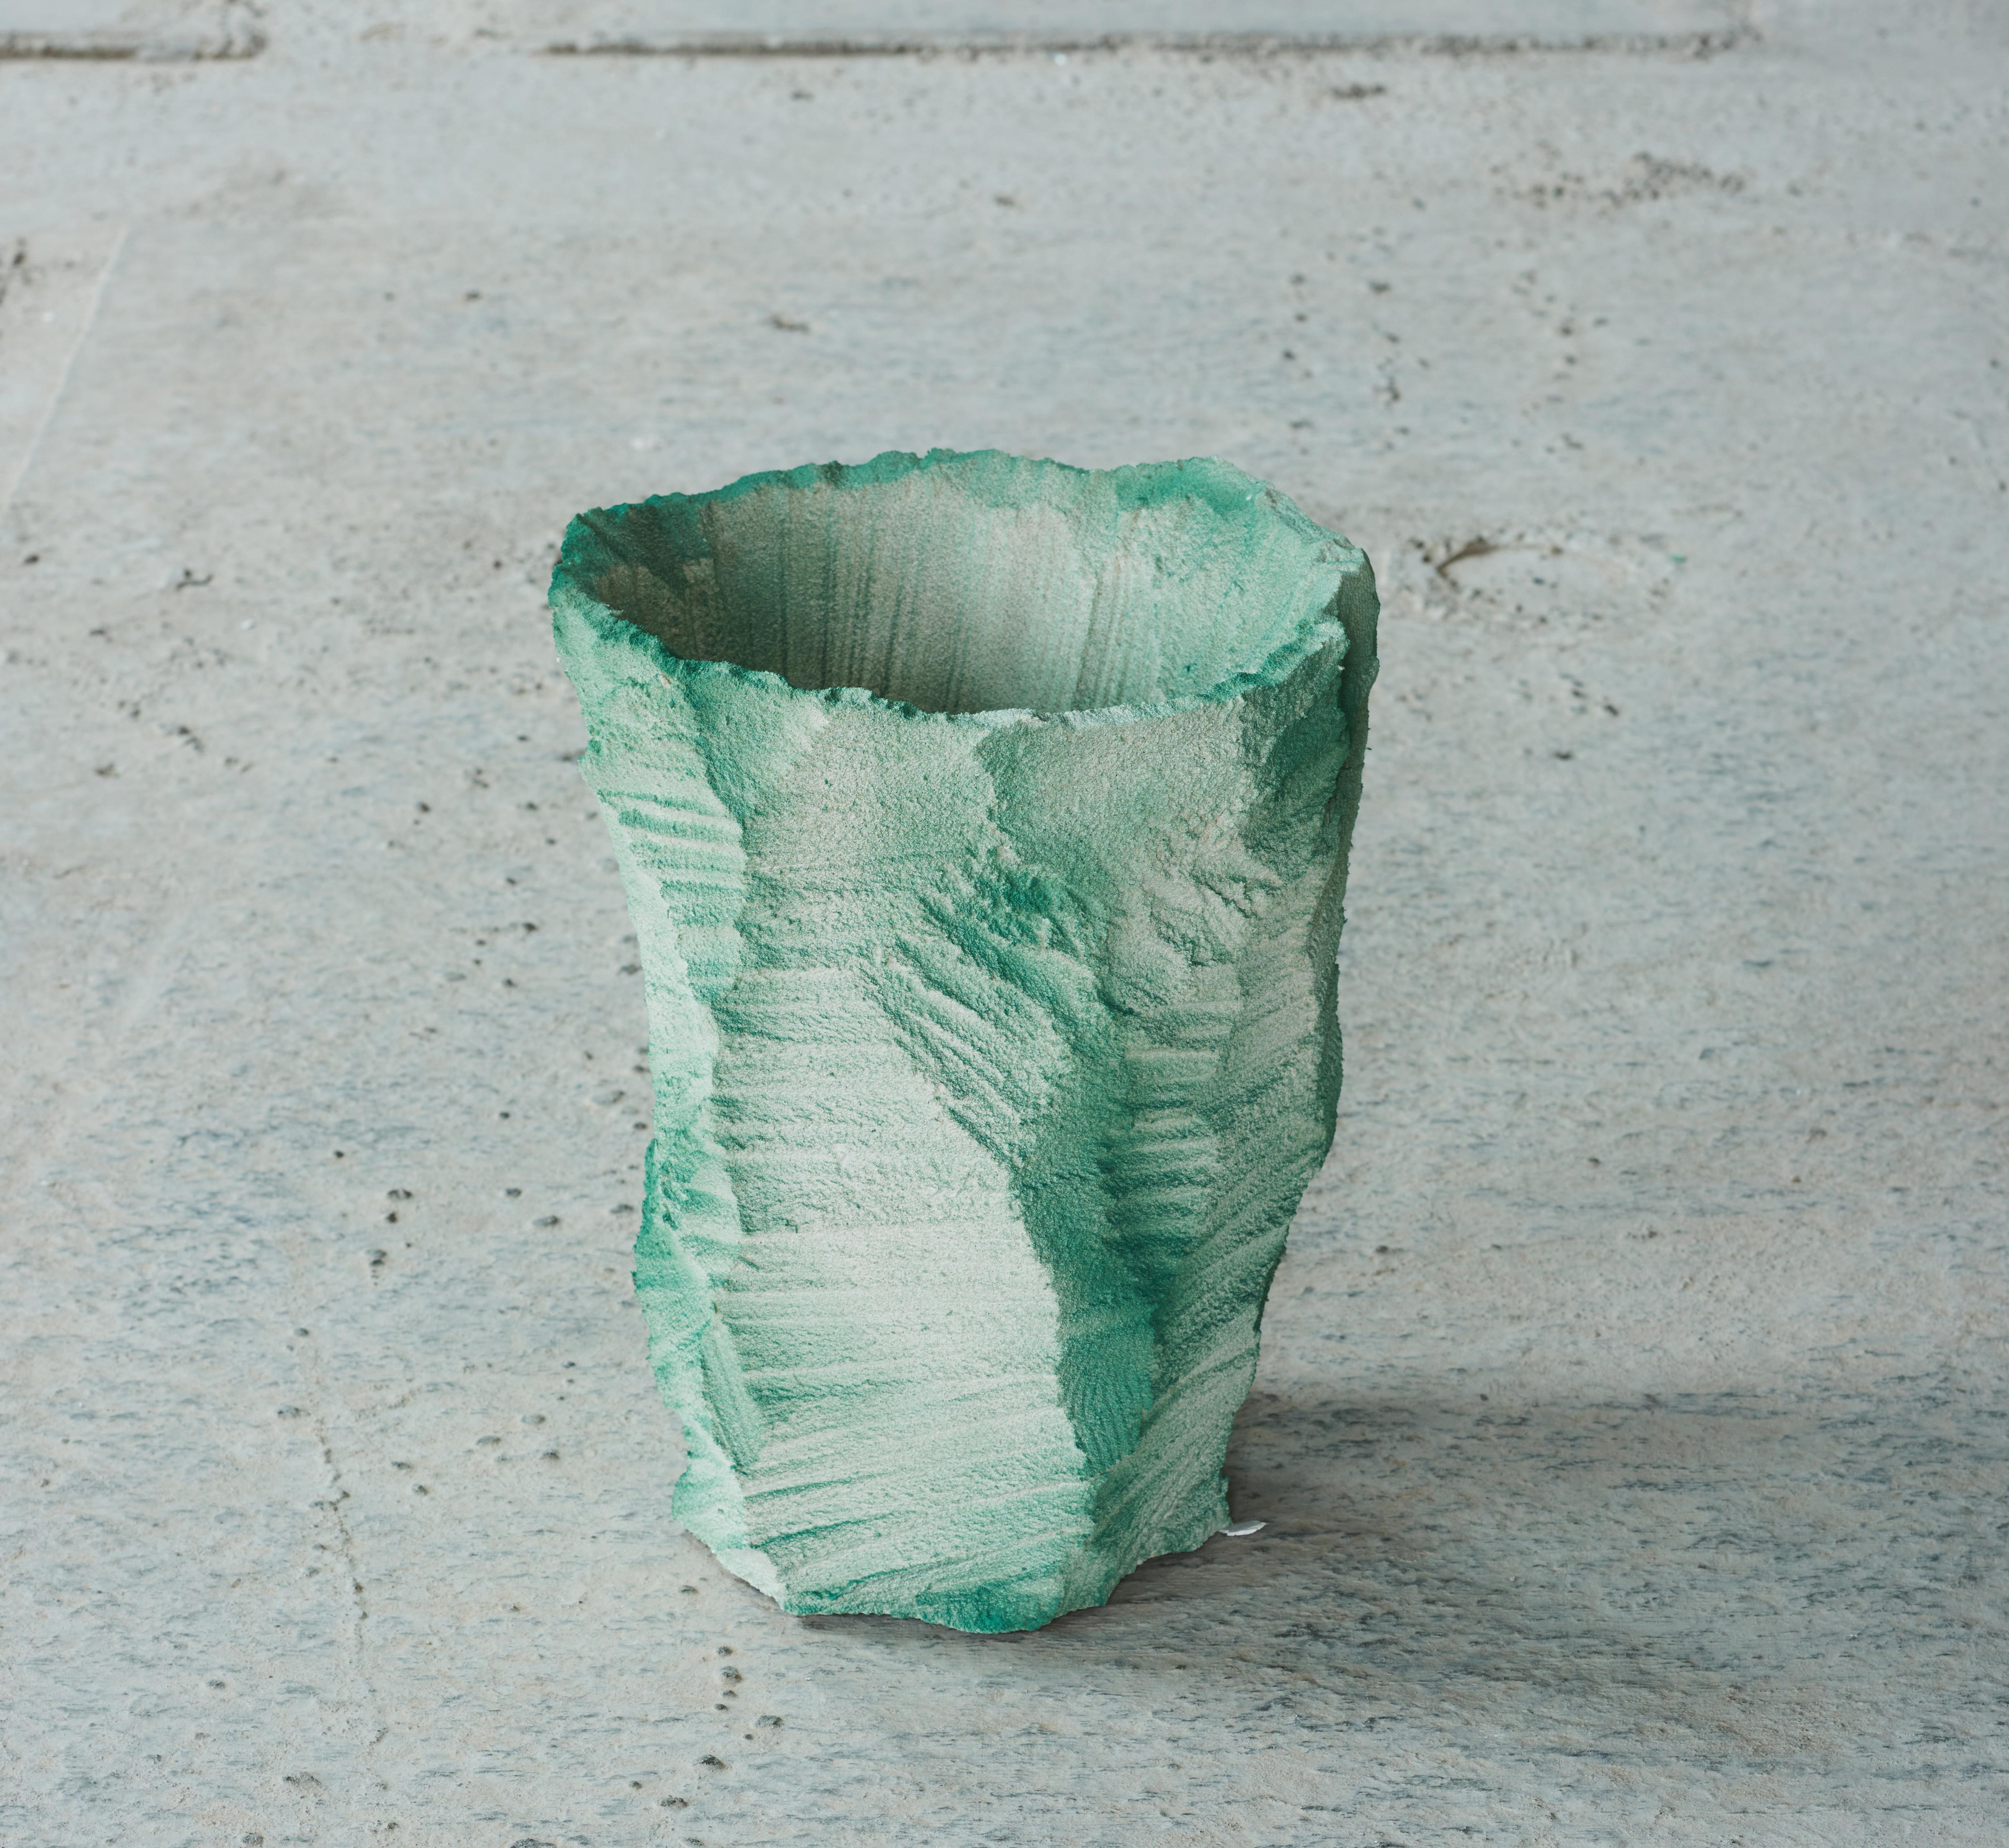 Einzigartig - Zeitgenössisches Design Moos - Vase von Andredottir & Bobek
Artificial Nature ist eine Zusammenarbeit zwischen dem Künstler- und Designduo Josephine Andredottir und Emilie Bobek

Sie haben in dieser Kollektion die Landschaft mit